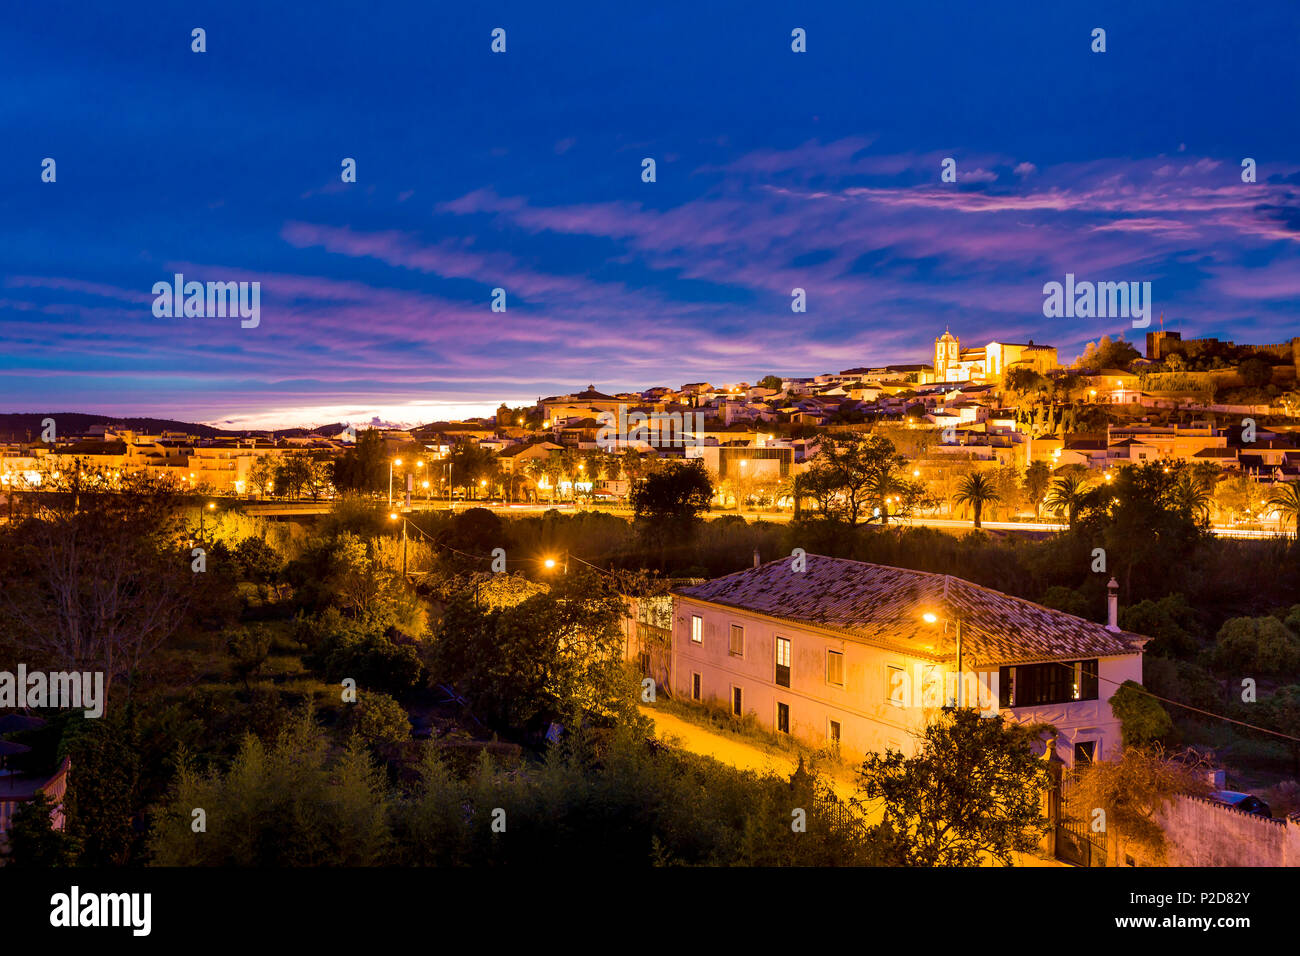 Vue vers la vieille ville, château et cathédrale au crépuscule, Silves, Algarve, Portugal Banque D'Images